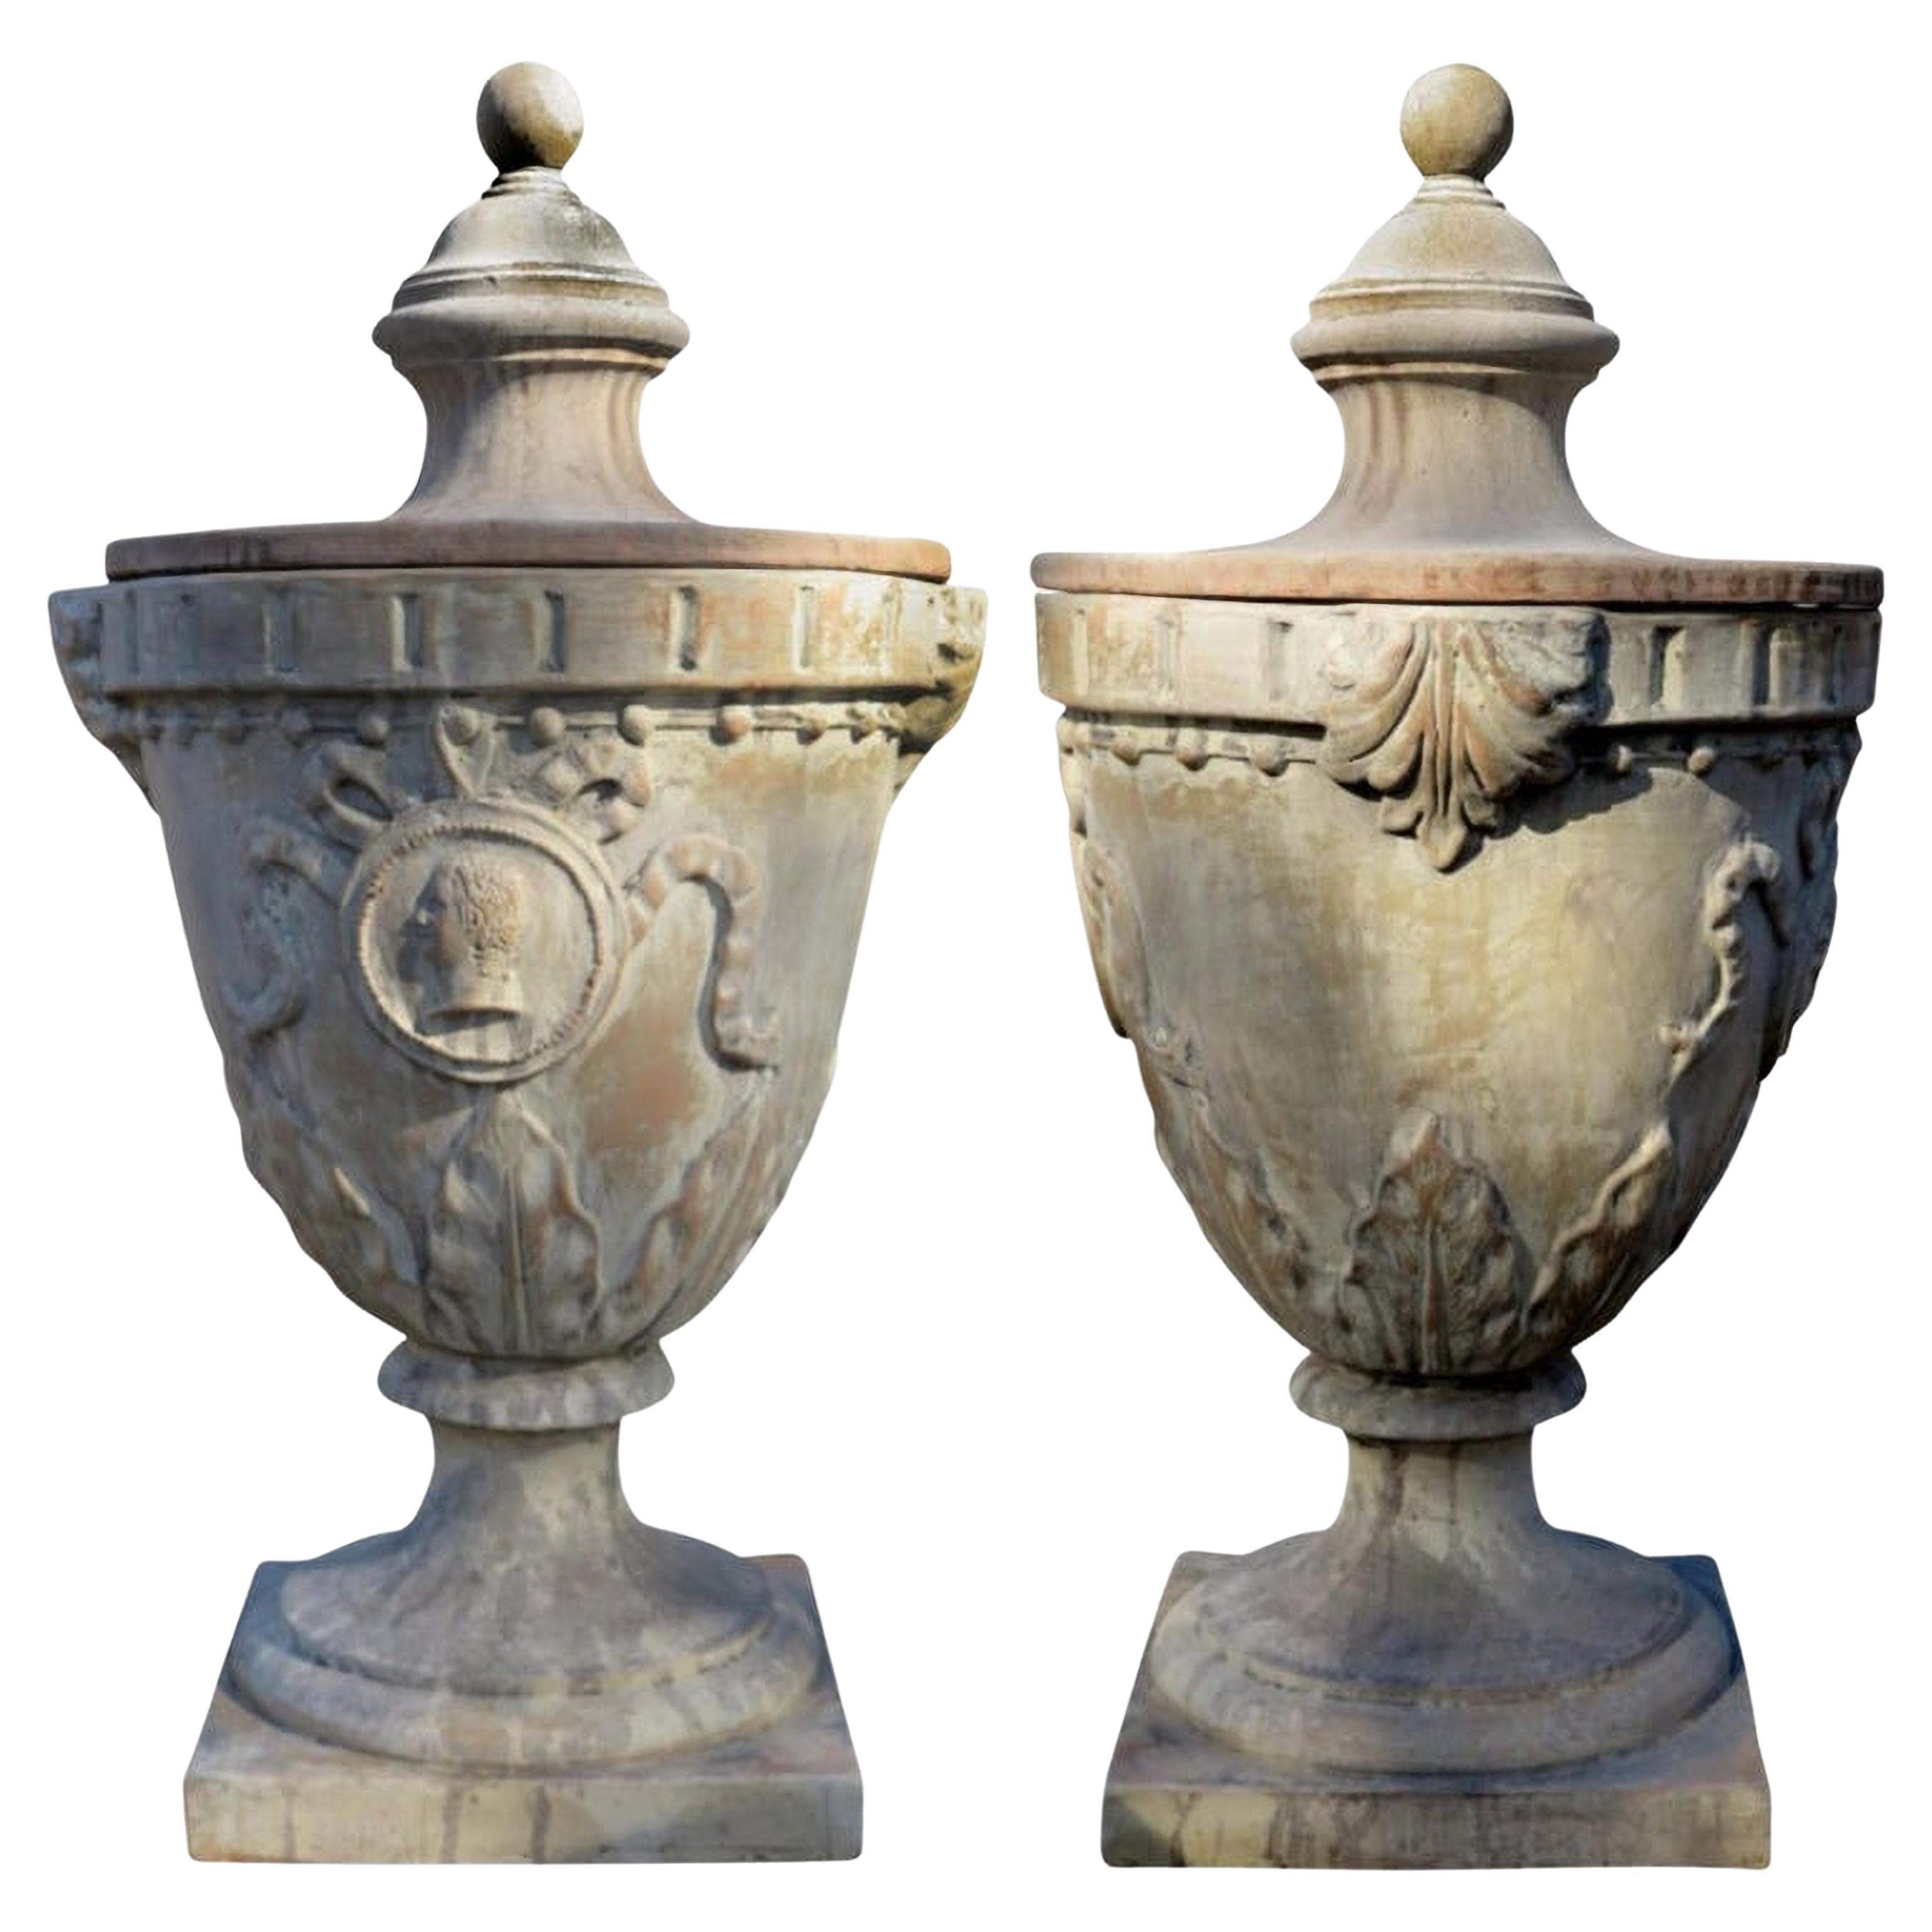 Medicean Pyramid, Medicean Chalice Vase with CAP Began, 20th Century